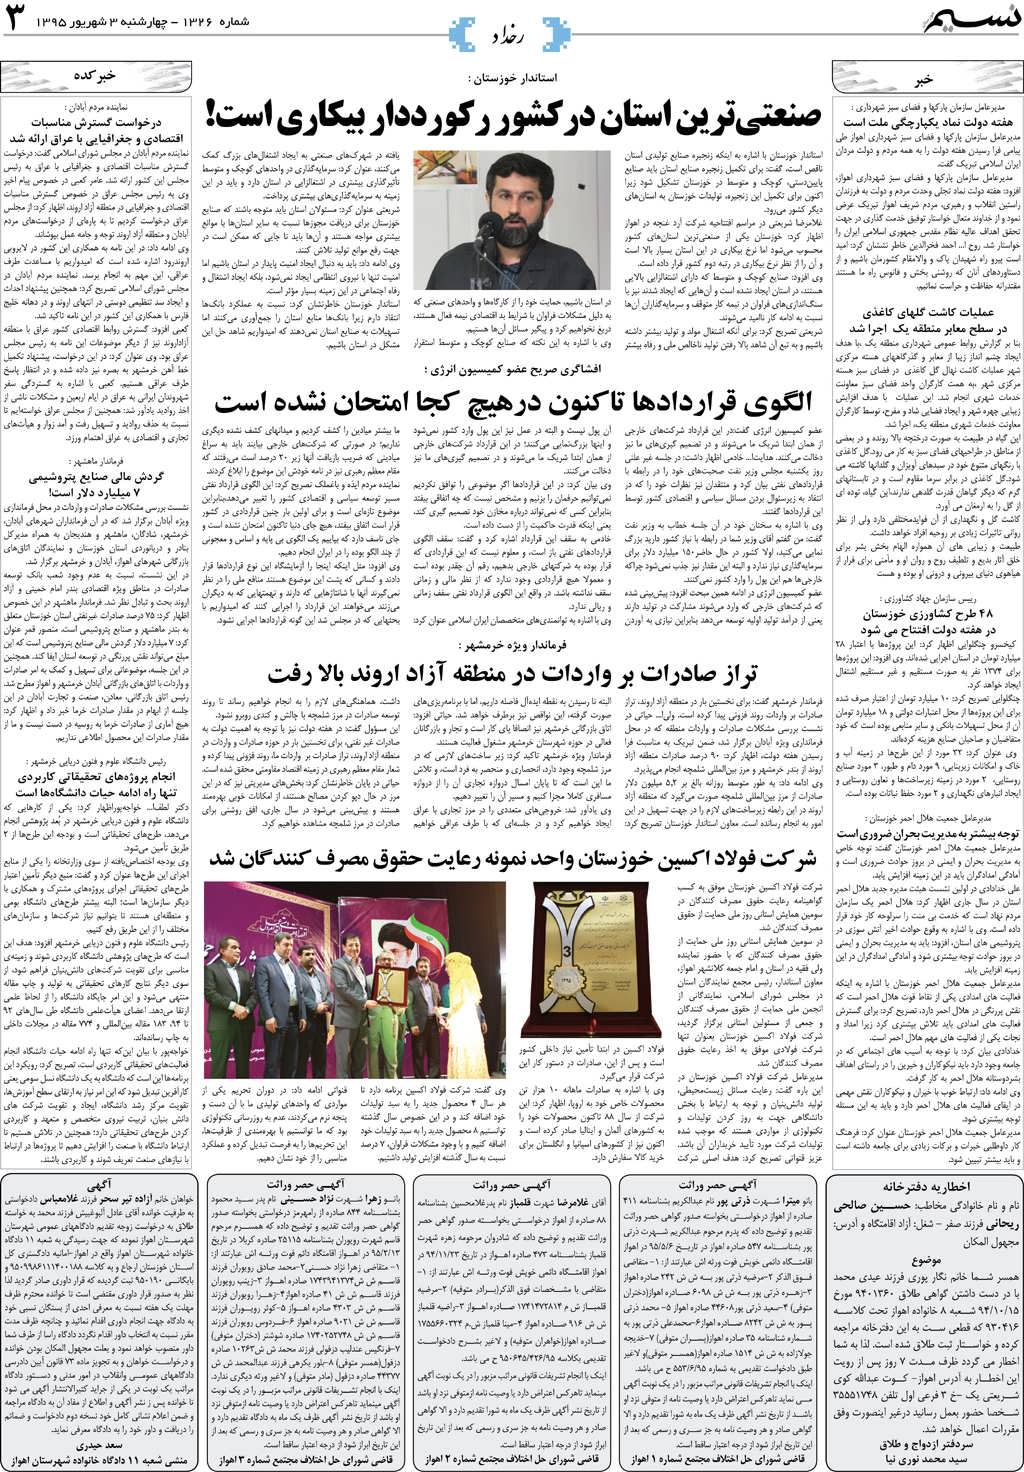 صفحه رخداد روزنامه نسیم شماره 1326